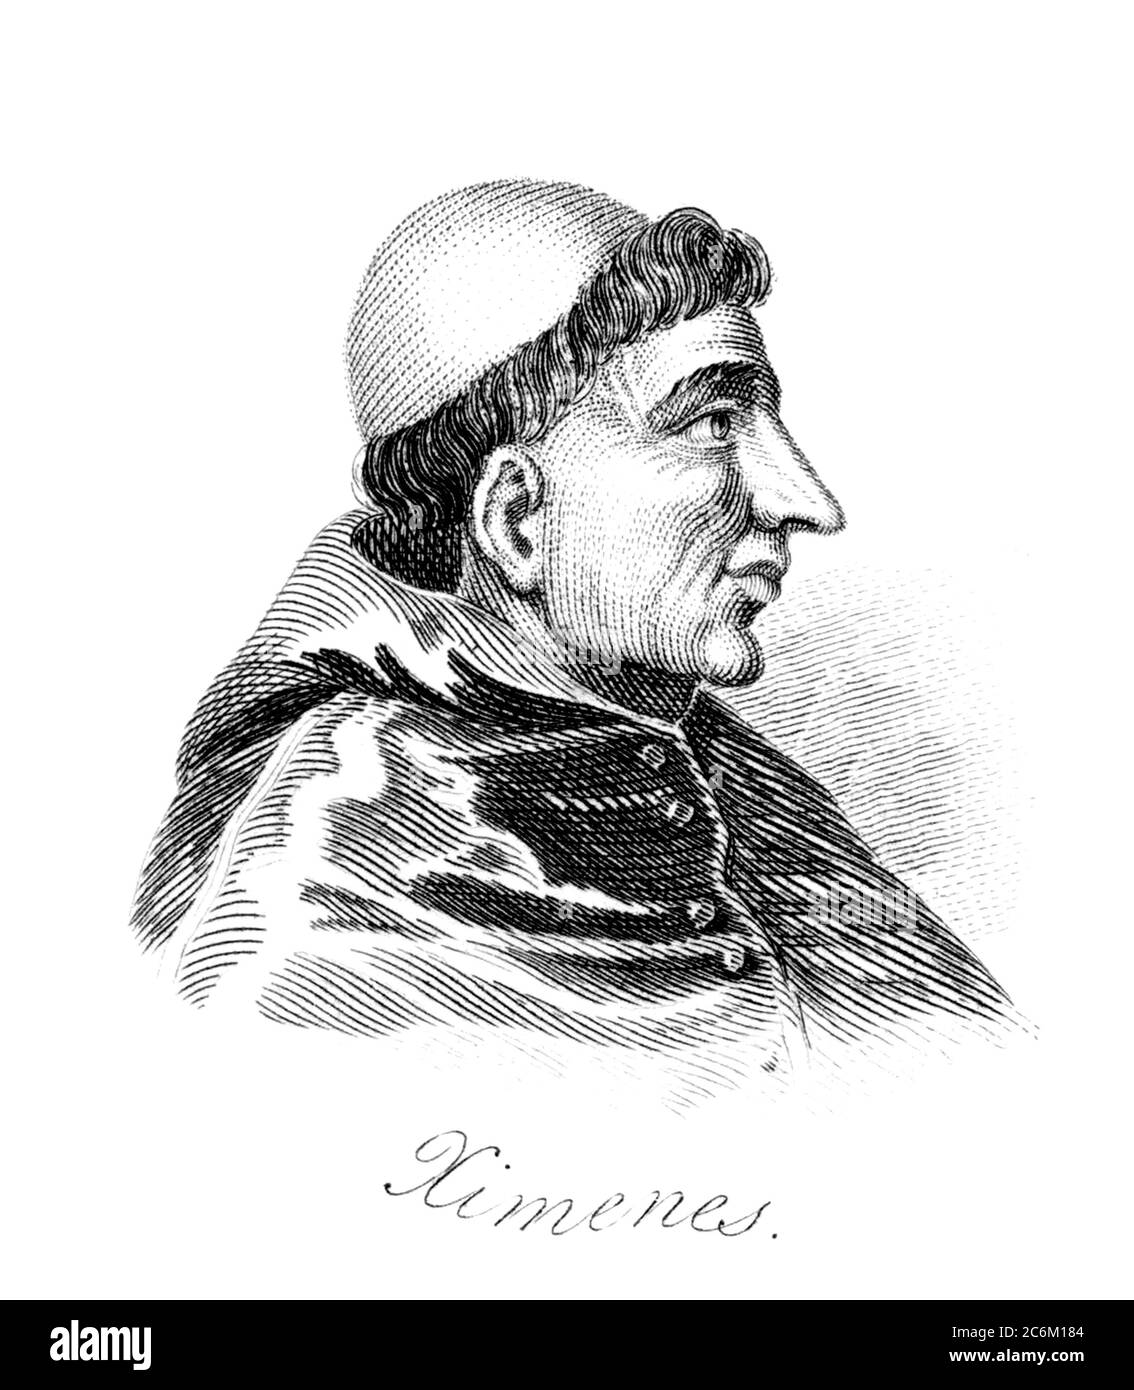 1510 c, SPAIN : The spanish Cardinal FRANCISCO JIMENEZ ( XIMENES ) DE CISNEROS ( 1436 - 1517 ), Roman Catholic Statesman  , Regent of Spain and Grand Inquisitor . Portrait engraved  and pubblished in XIX century . - RELIGIONE CATTOLICA - ARCIVESCOVO - CARDINALE - CATHOLIC RELIGION - CLERICALI - CLERICALE - ALTO PRELATO - VATICANO - VATICAN - SPAGNA - SANTA INQUISIZIONE - INQUISITORE - FRANCESCANO - ORDINE DEI FRANCESCANI - illustrazione - illustration - incisione - POLITICO- POLITICIAN - POLITICA - POLITIC - Reggente del Regno di Castiglia - Castilla --- Archivio GBB Stock Photo